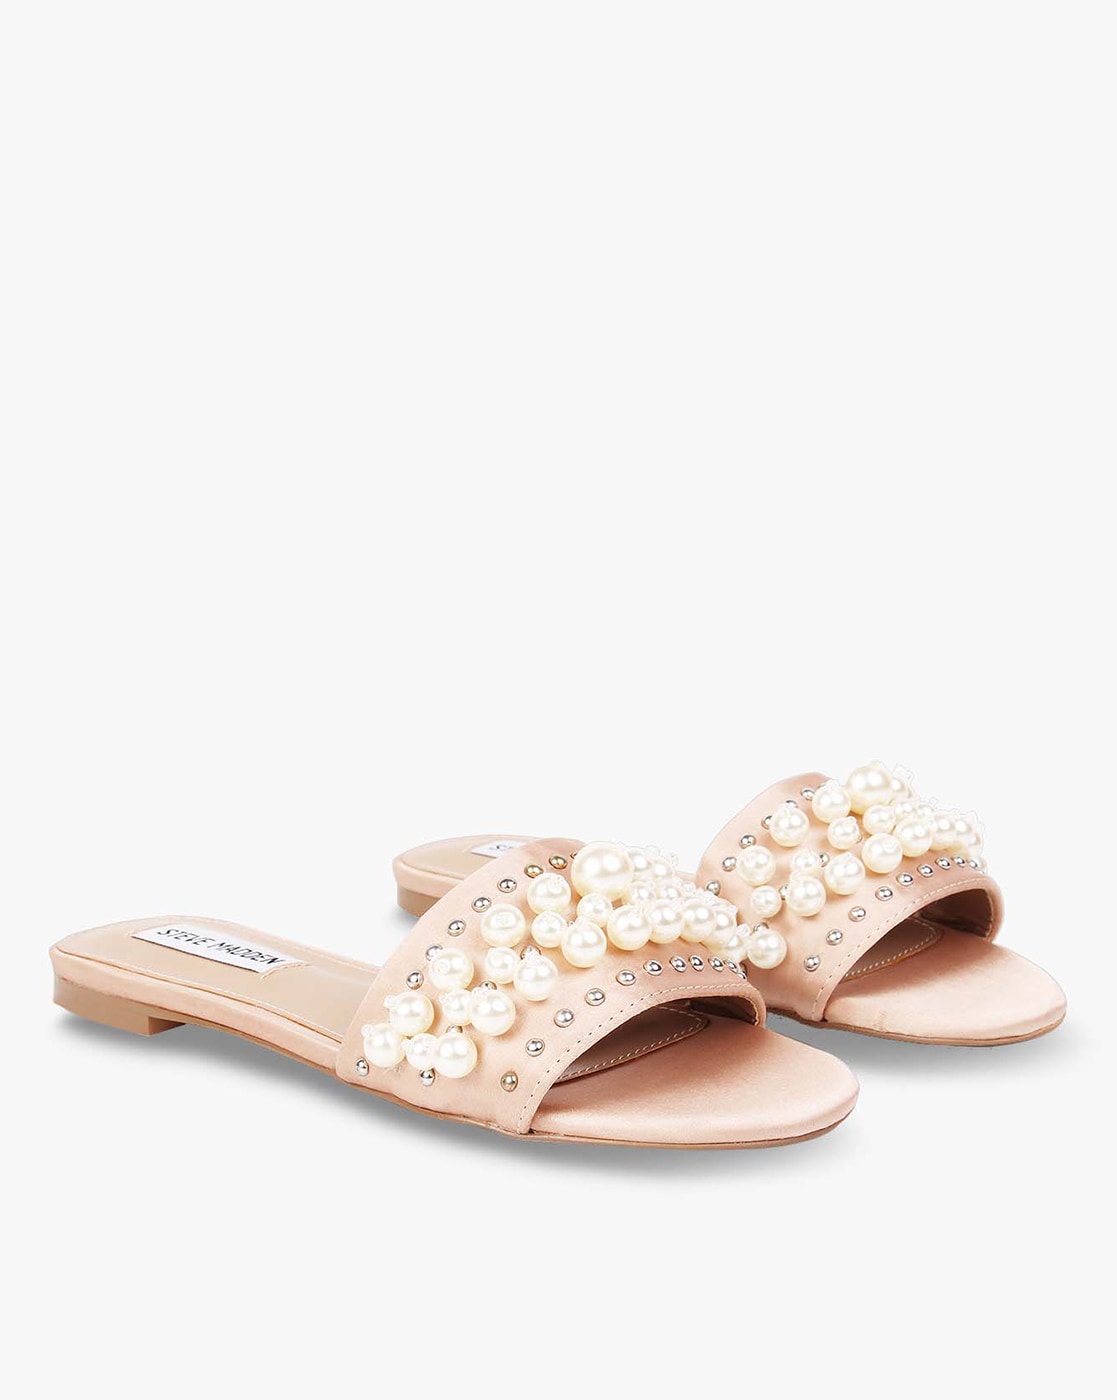 Buy > steve madden pearl sandals > in stock